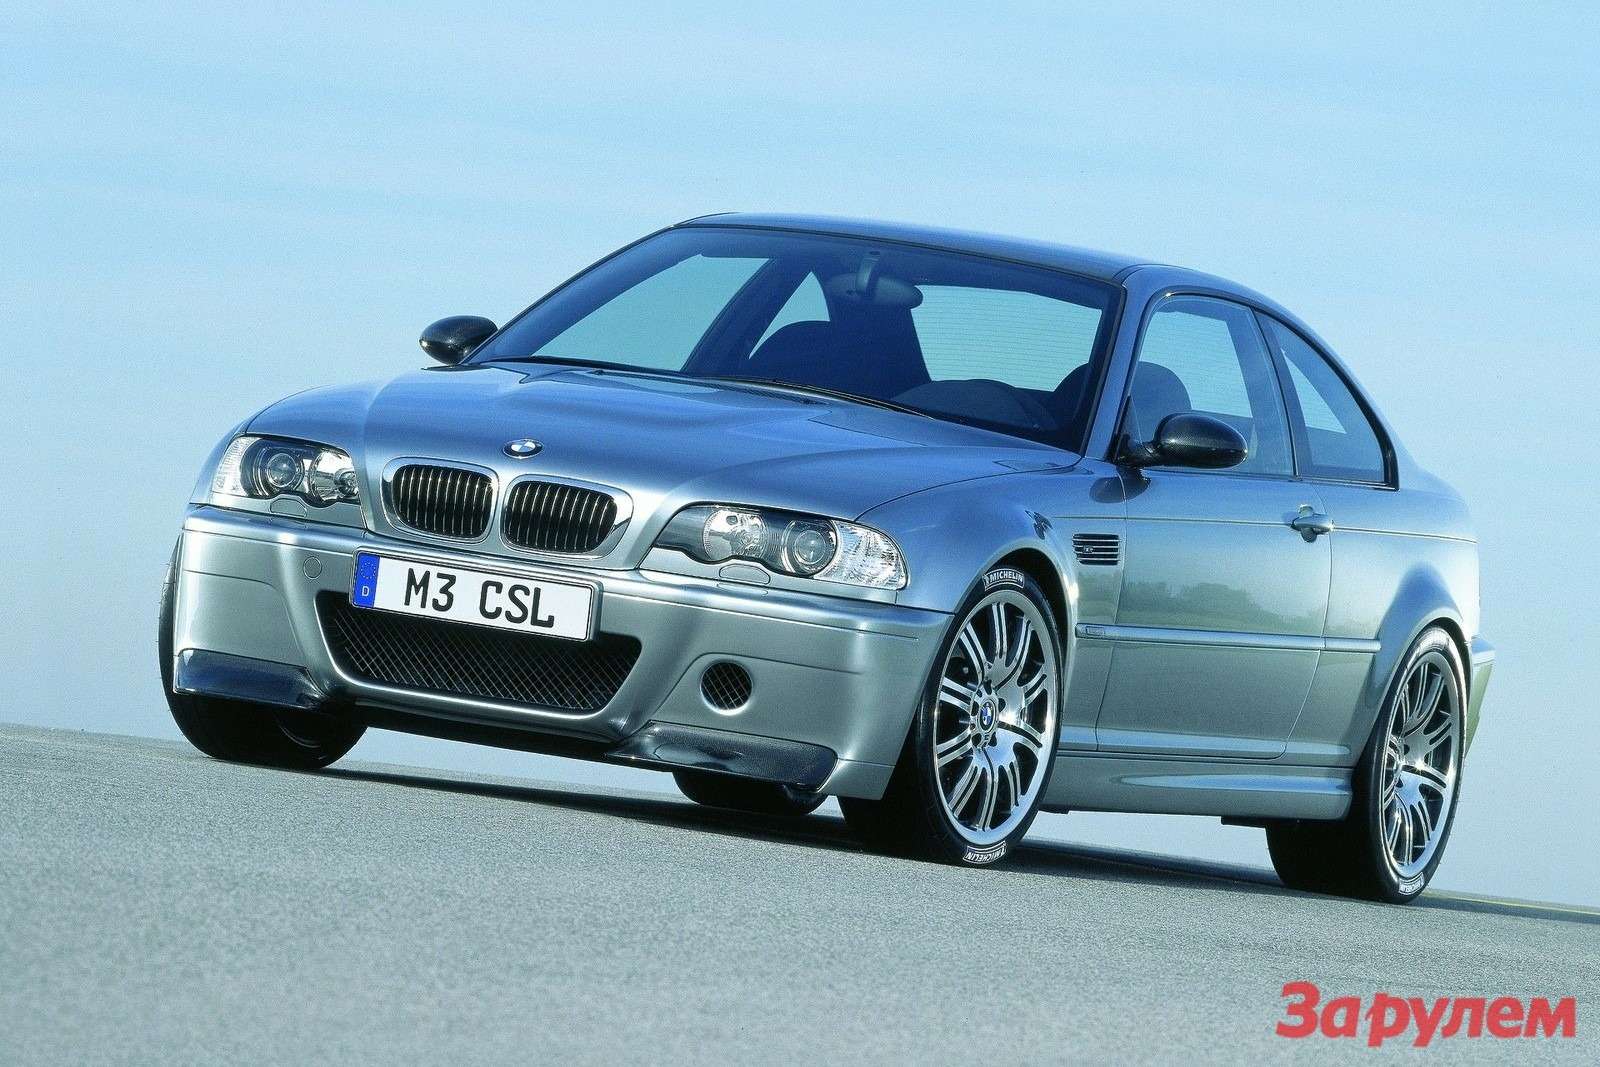 BMW M3 CSL 2003 1600x1200 wallpaper 06